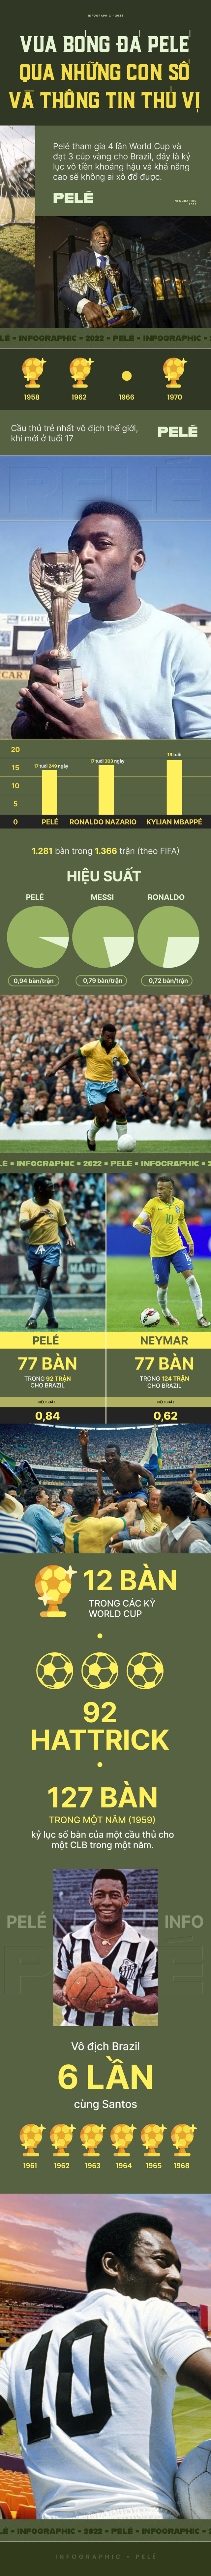 Infographic: 'Vua bóng đá' Pelé vĩ đại tới đâu mà được Brazil tổ chức quốc tang tiễn đưa? - Ảnh 1.